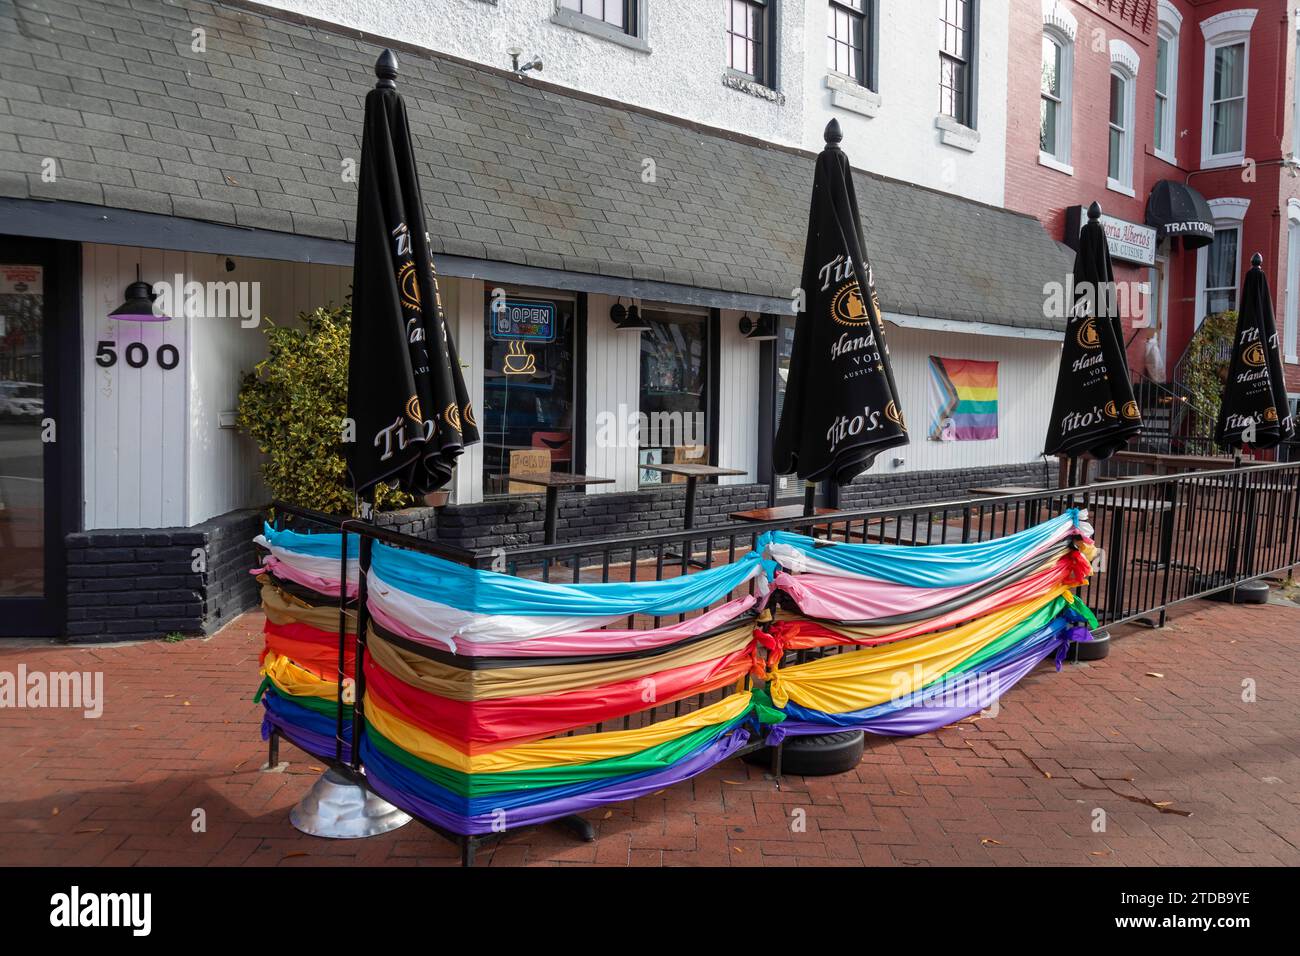 Washington, DC - Como usted es, un restaurante / bar en Capitol Hill que dice que es un espacio seguro para todos, incluidas las personas LGBTQ. Foto de stock